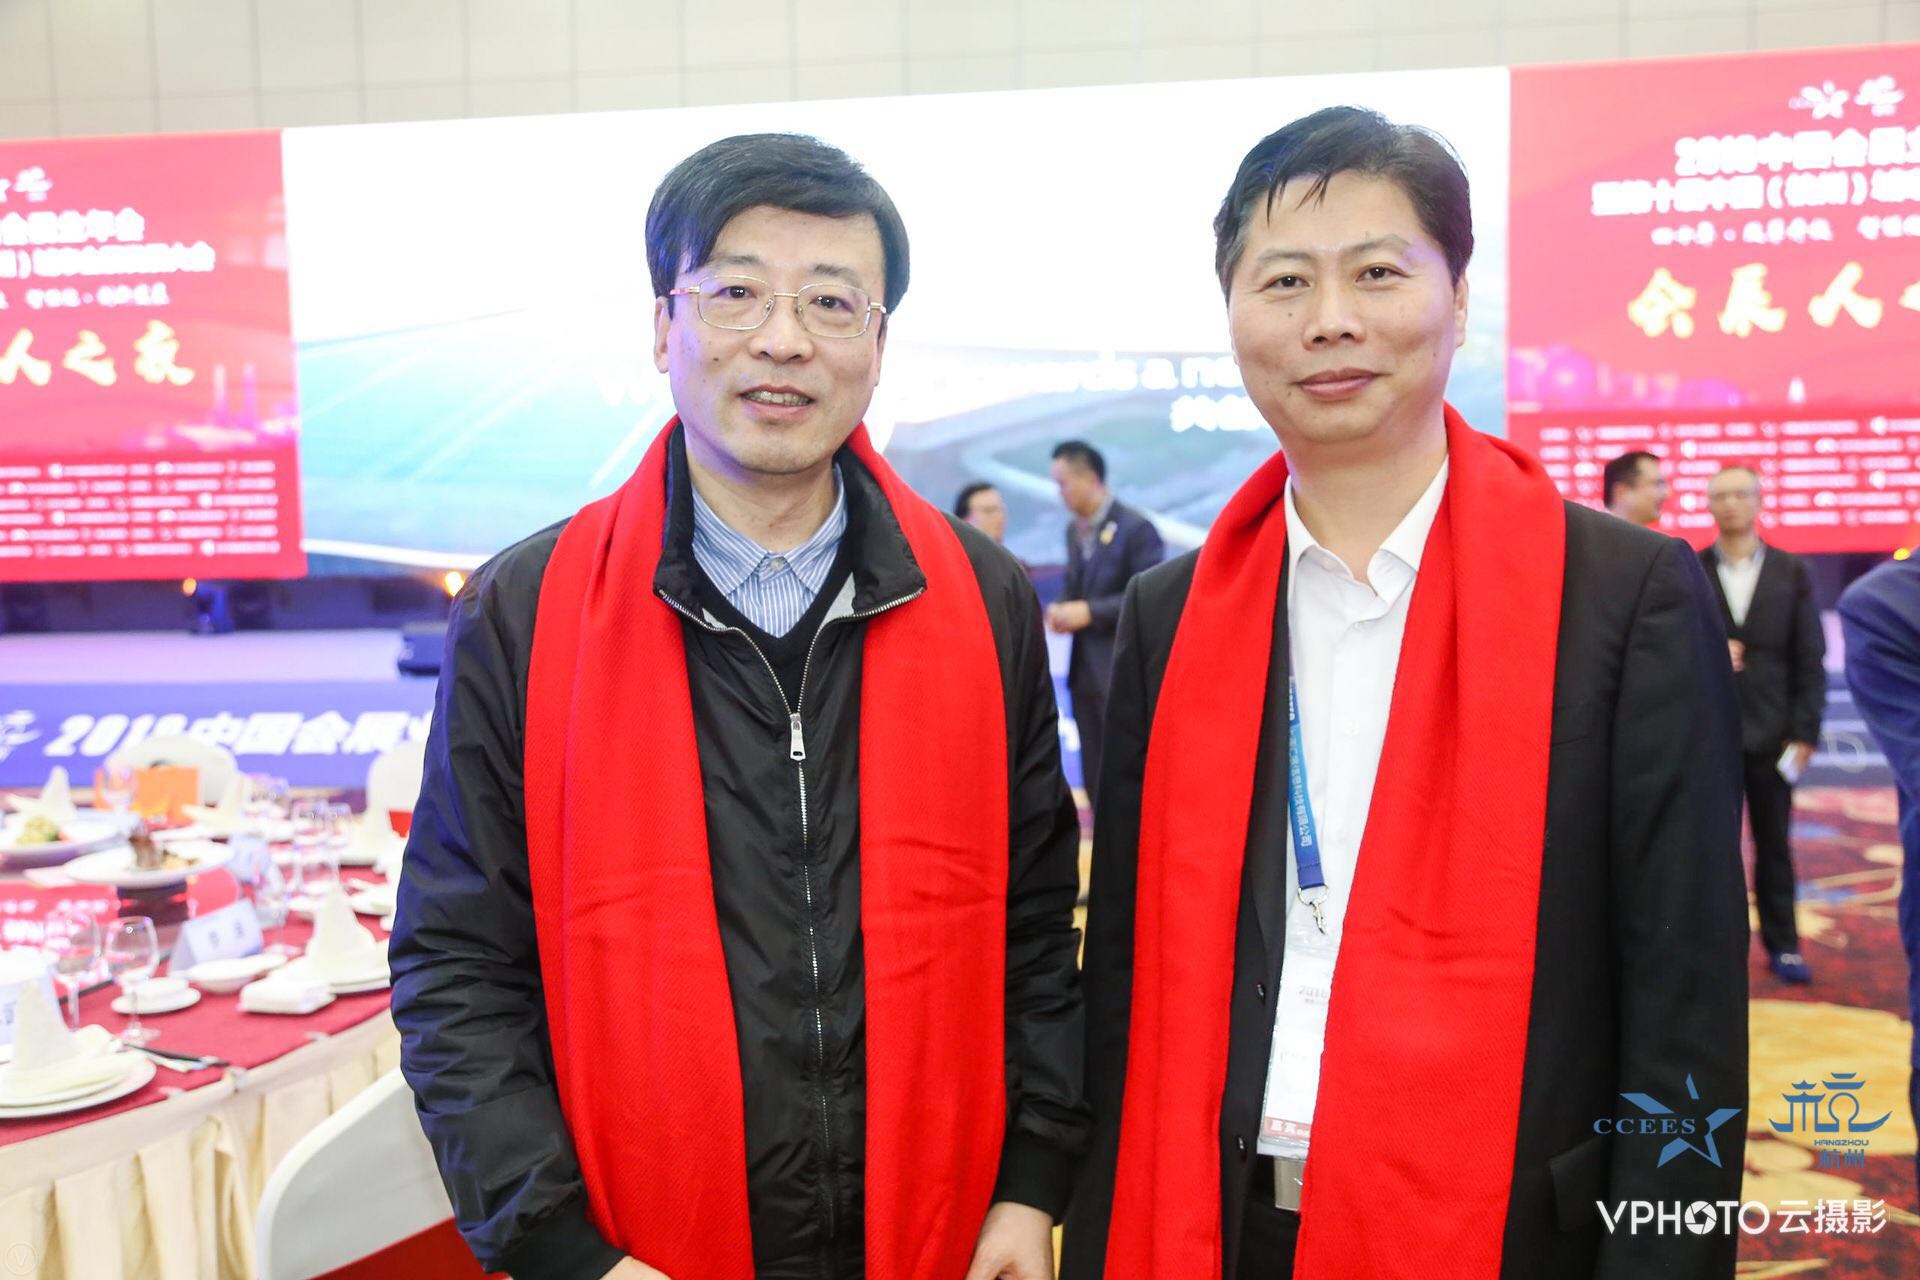 奥罗拉董事长邓涛(左)与杭州市会展办主任裘建平先生(右)合影 返回搜